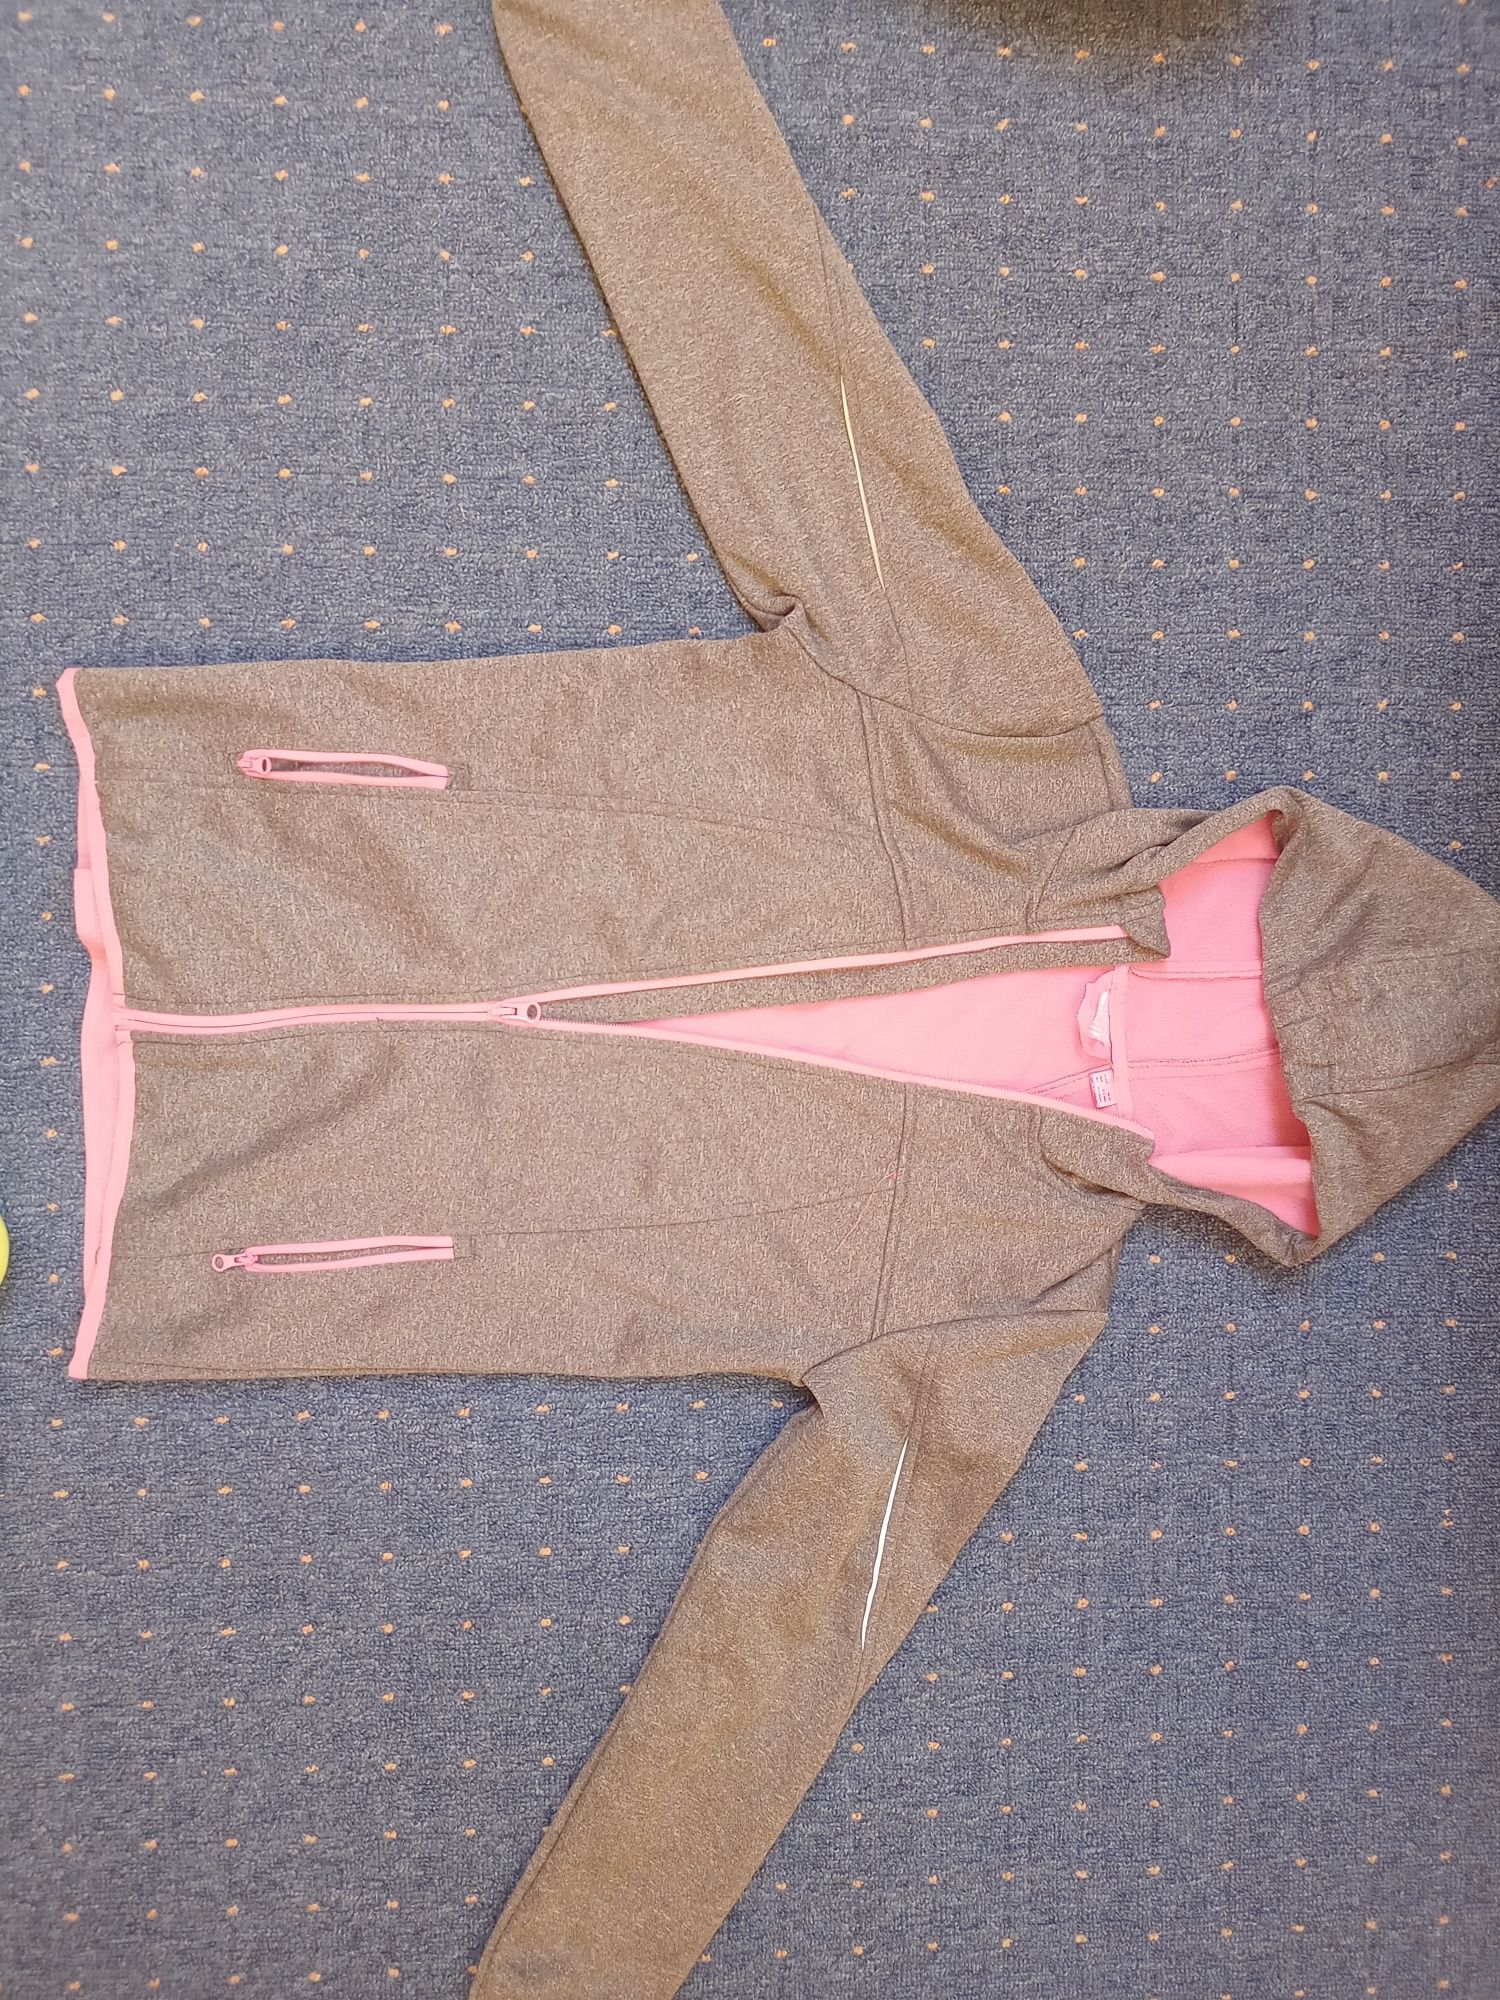 Bluza lub kurtka dla dziewczynki Crivit ( Lidl) 146-152